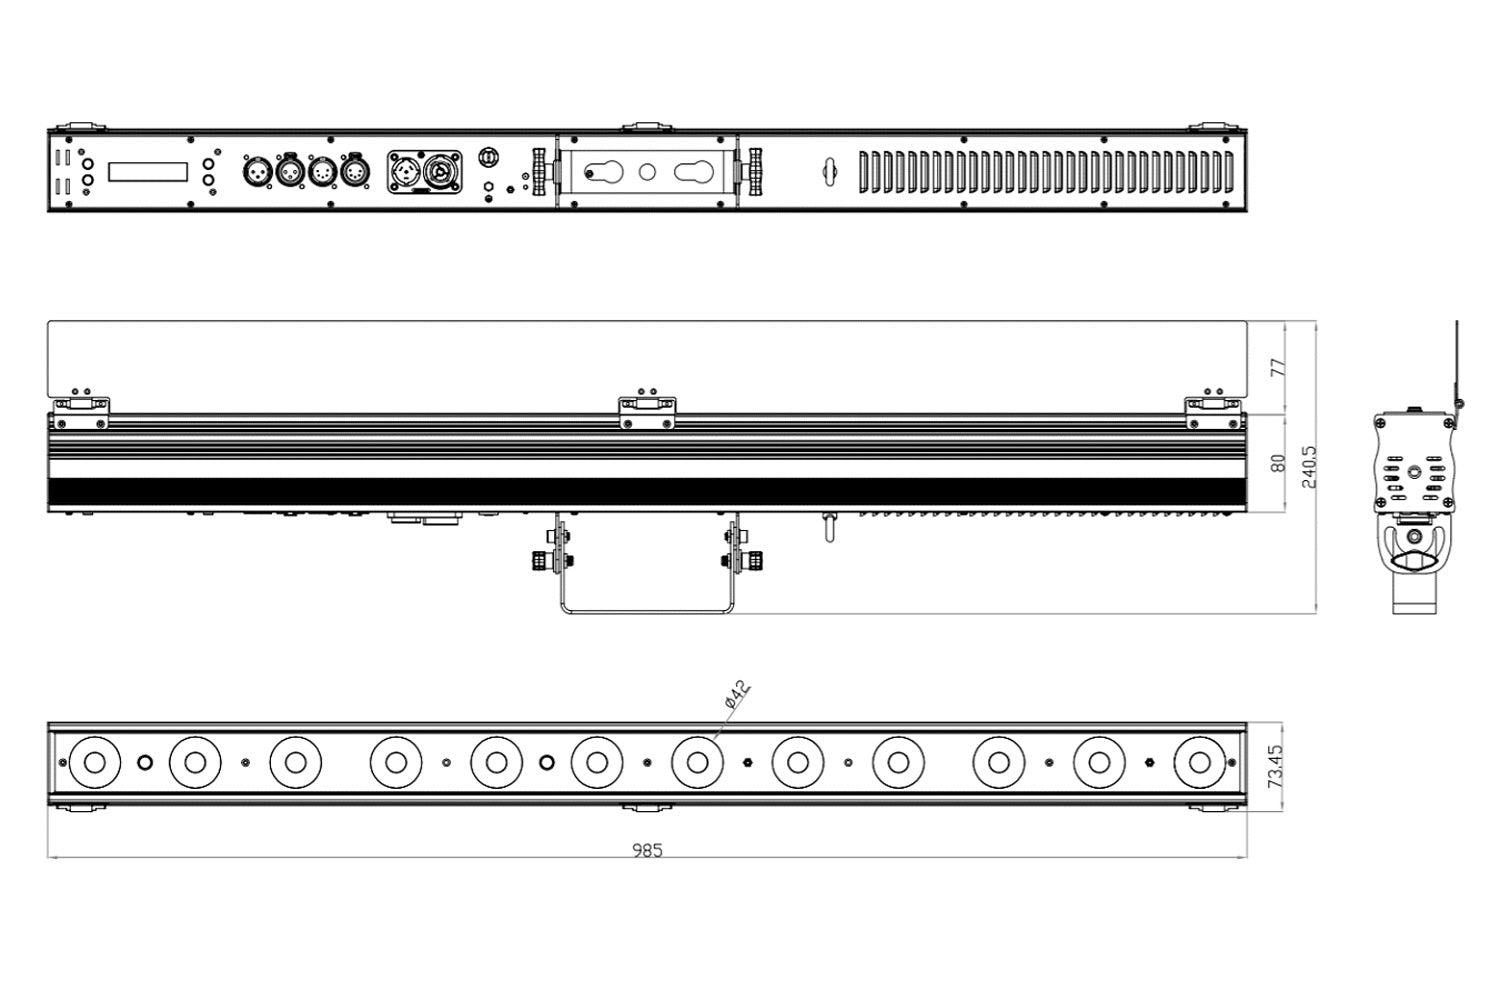 PIXBAR12VW - 12 x 6W CW/WW/A Pixel Control Bar with barndoor